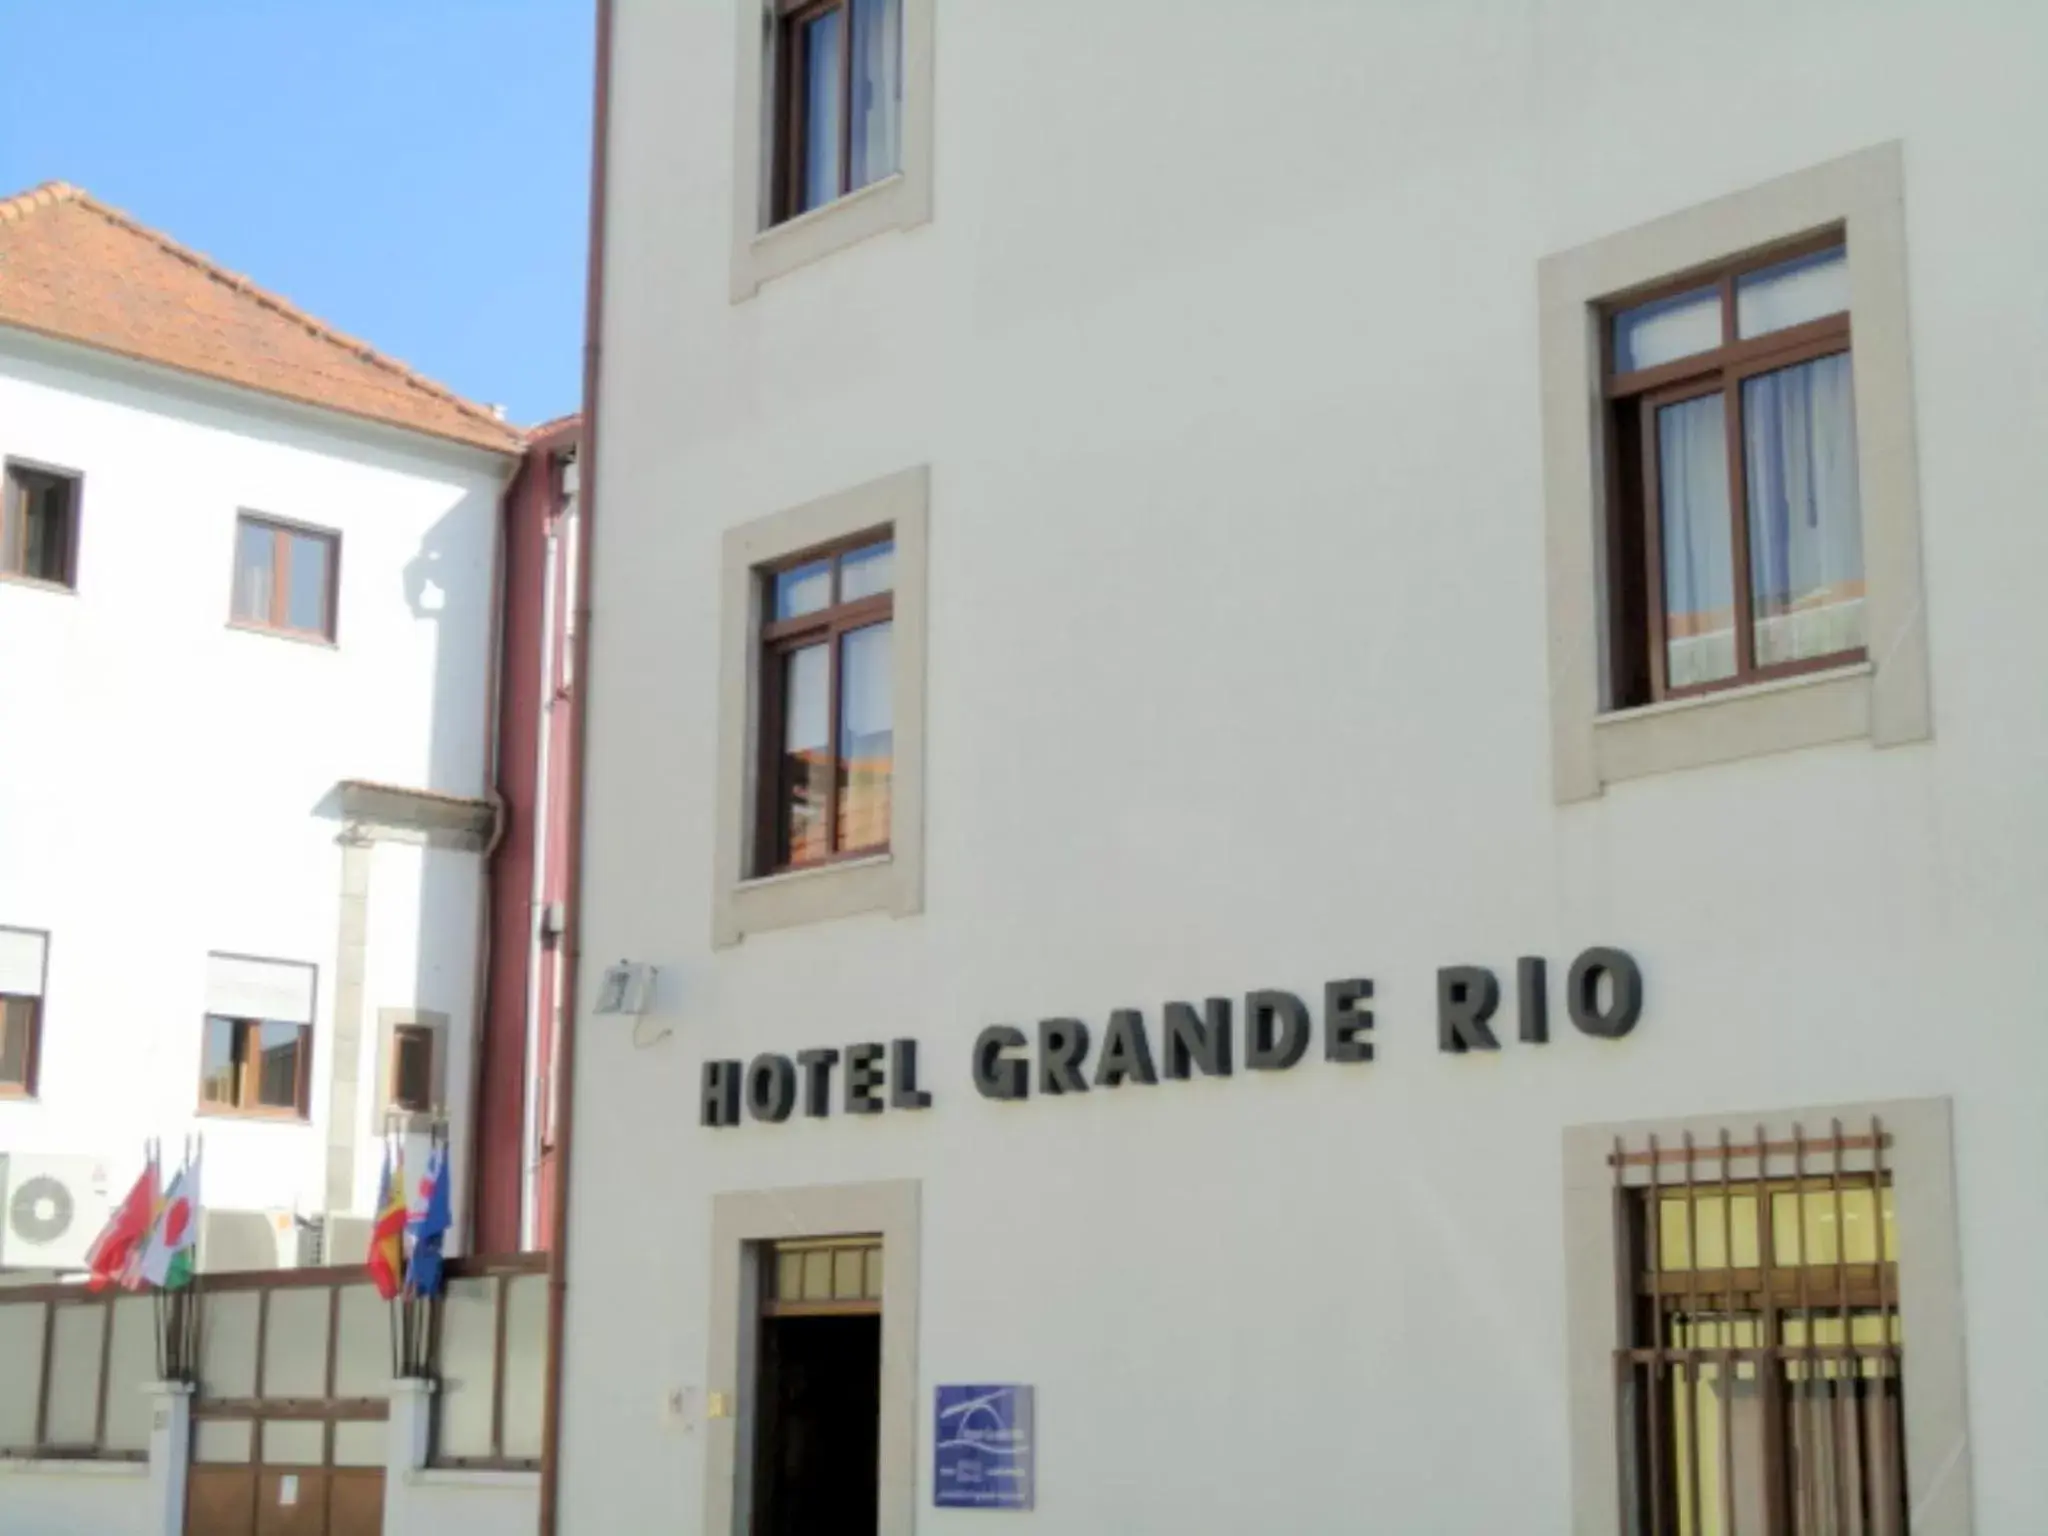 Facade/entrance, Property Building in Hotel Grande Rio